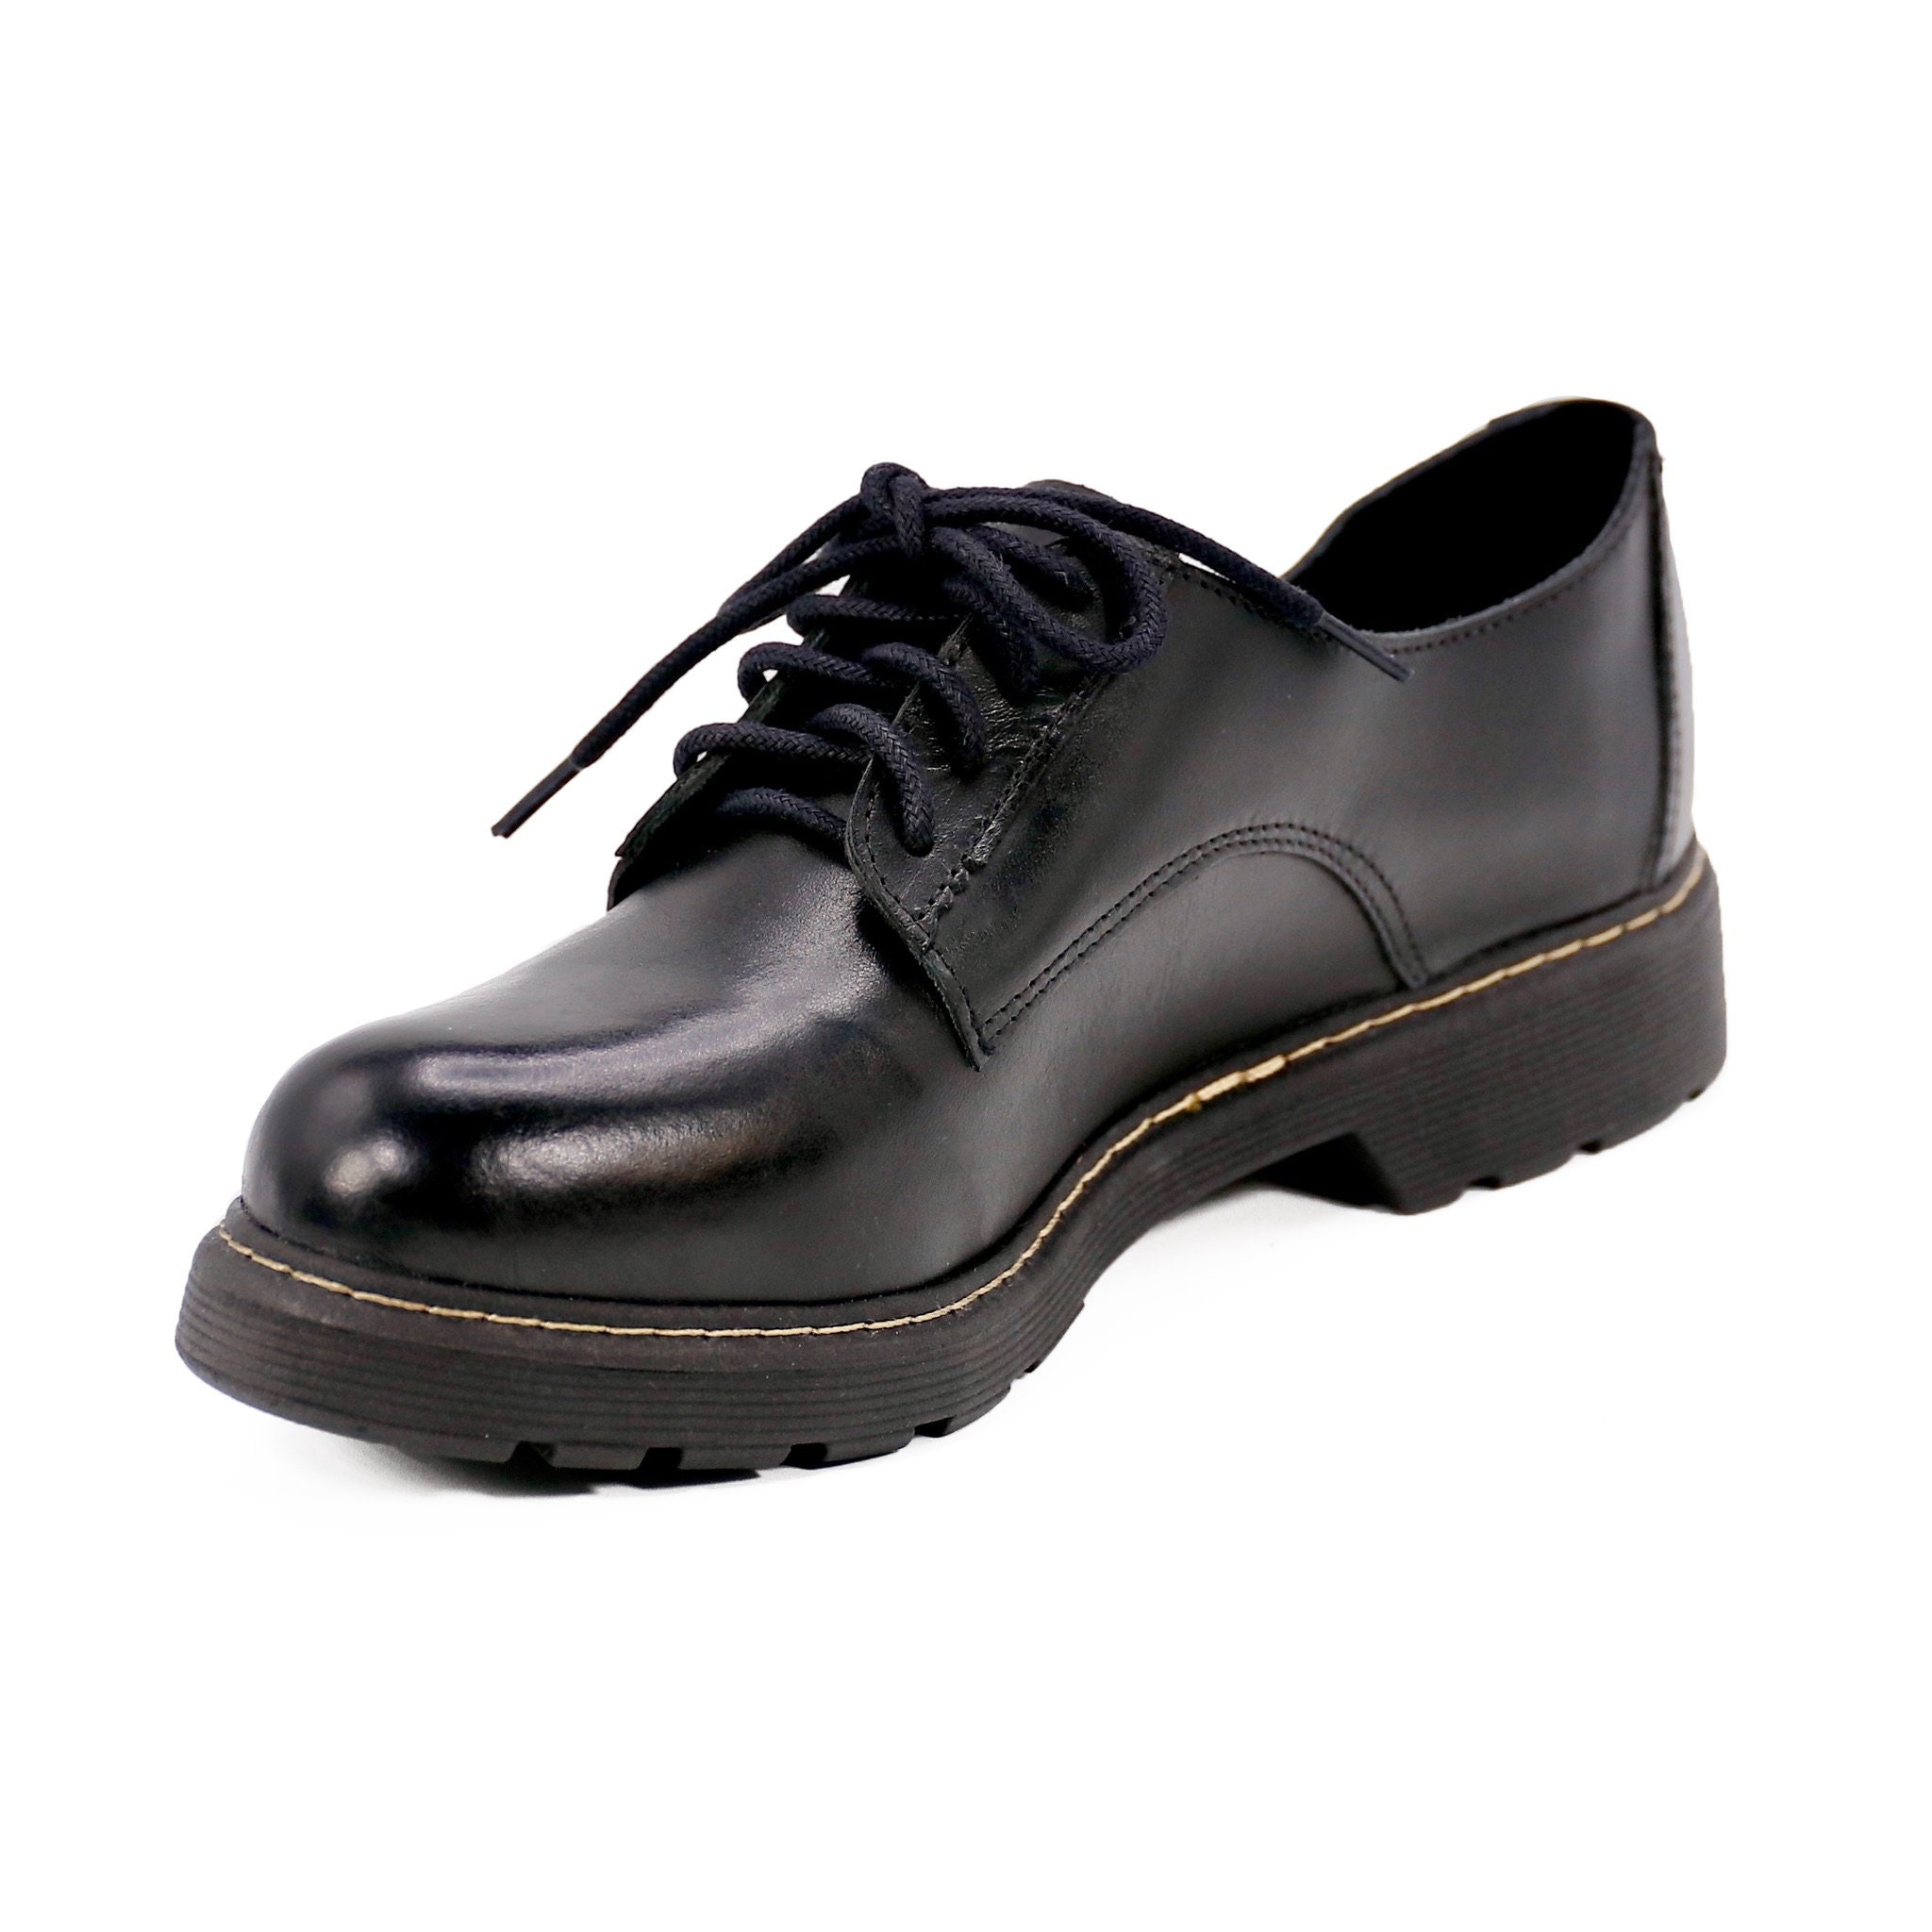 Delia Leather Shoes Women Black Shoes Women Comfortable - Etsy